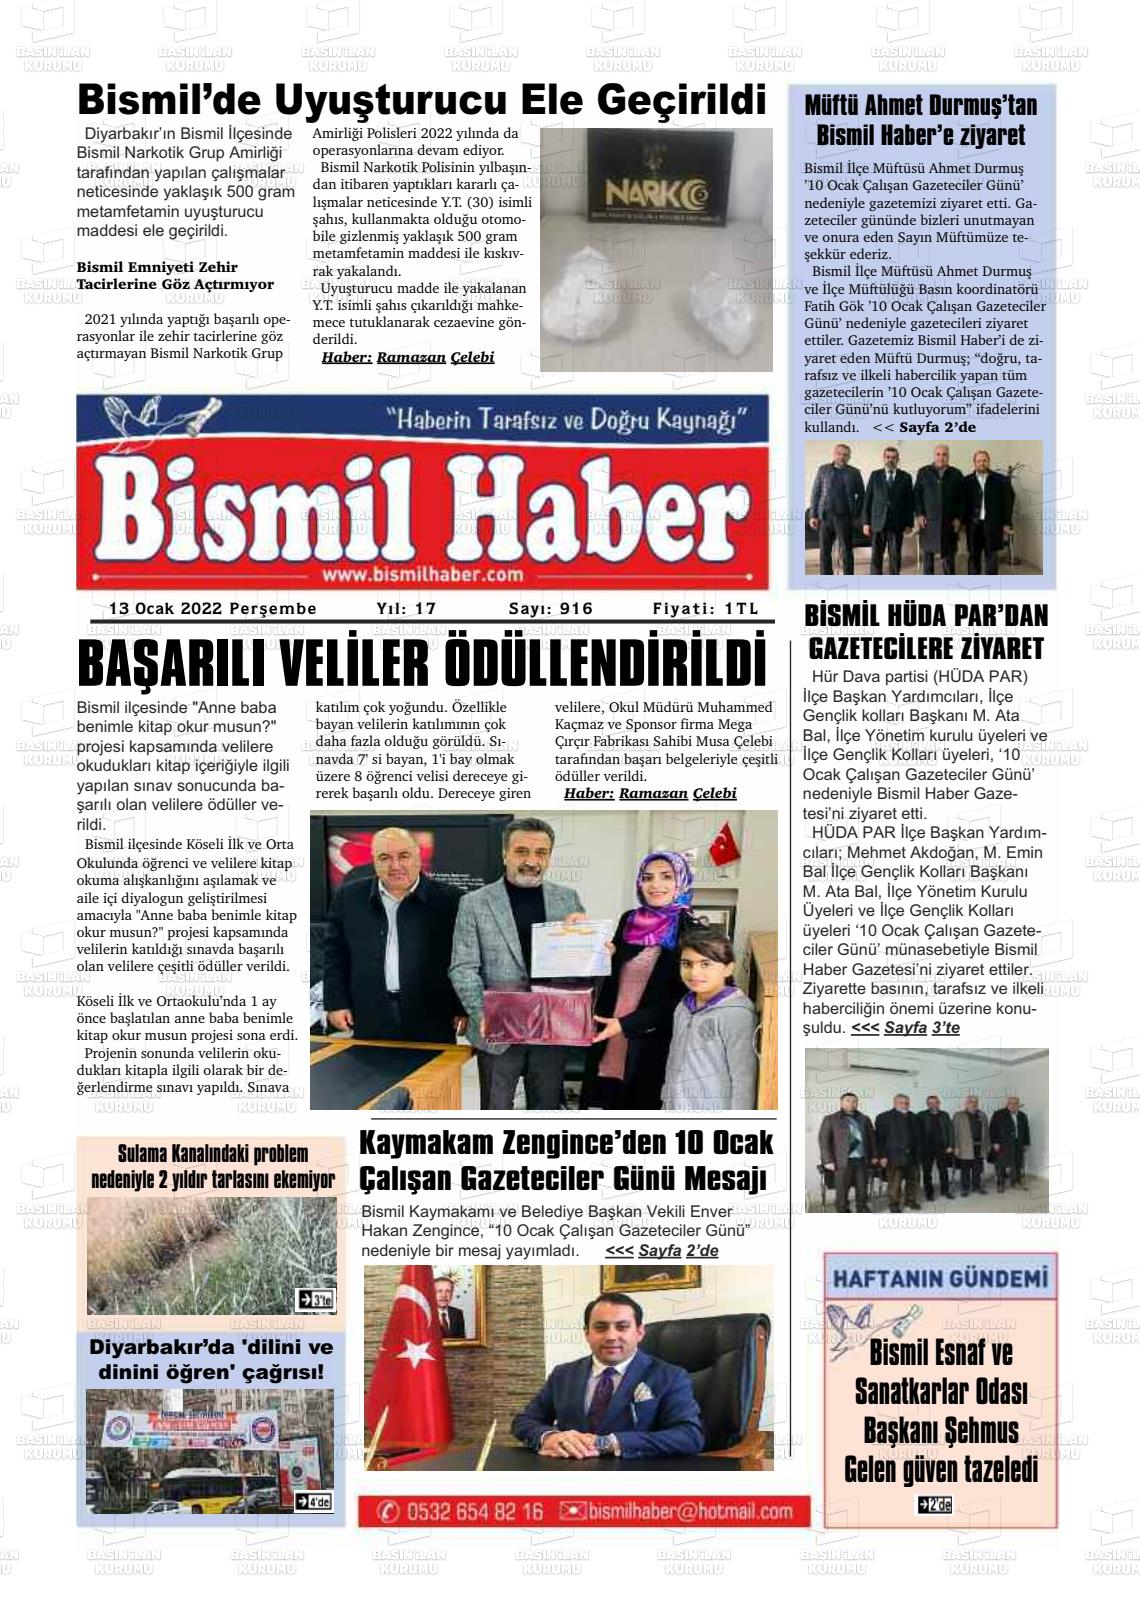 13 Ocak 2022 Bismil Haber Gazete Manşeti